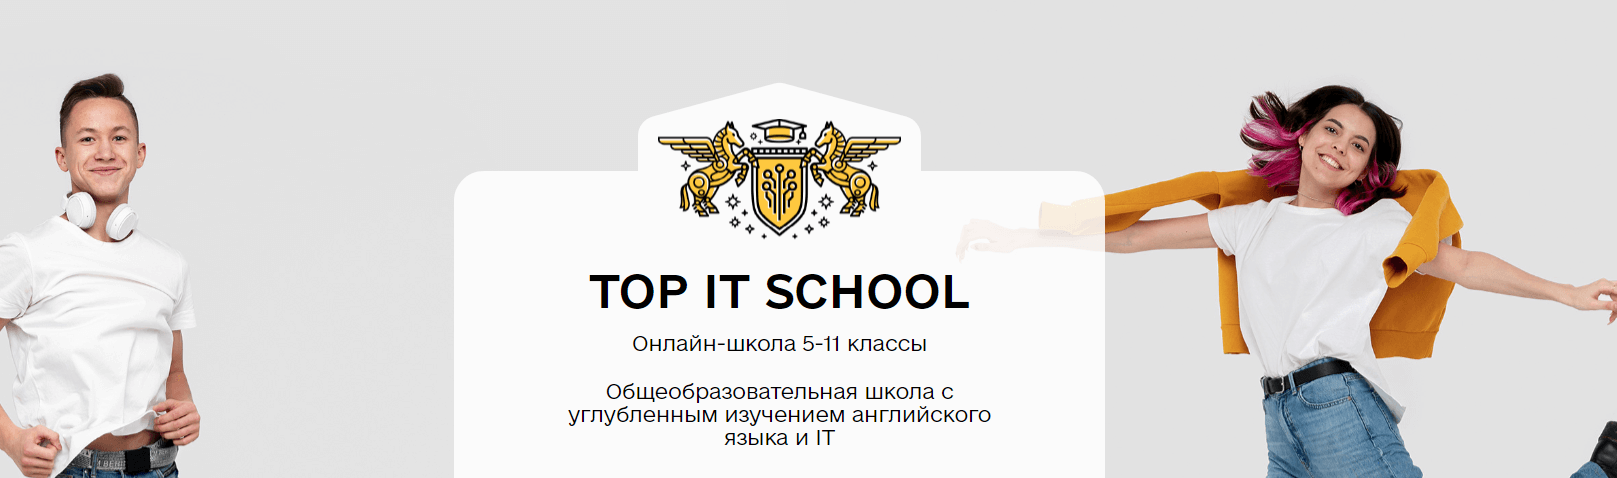 Академия ТОП: Общеобразовательная школа с углубленным изучением английского языка и IT